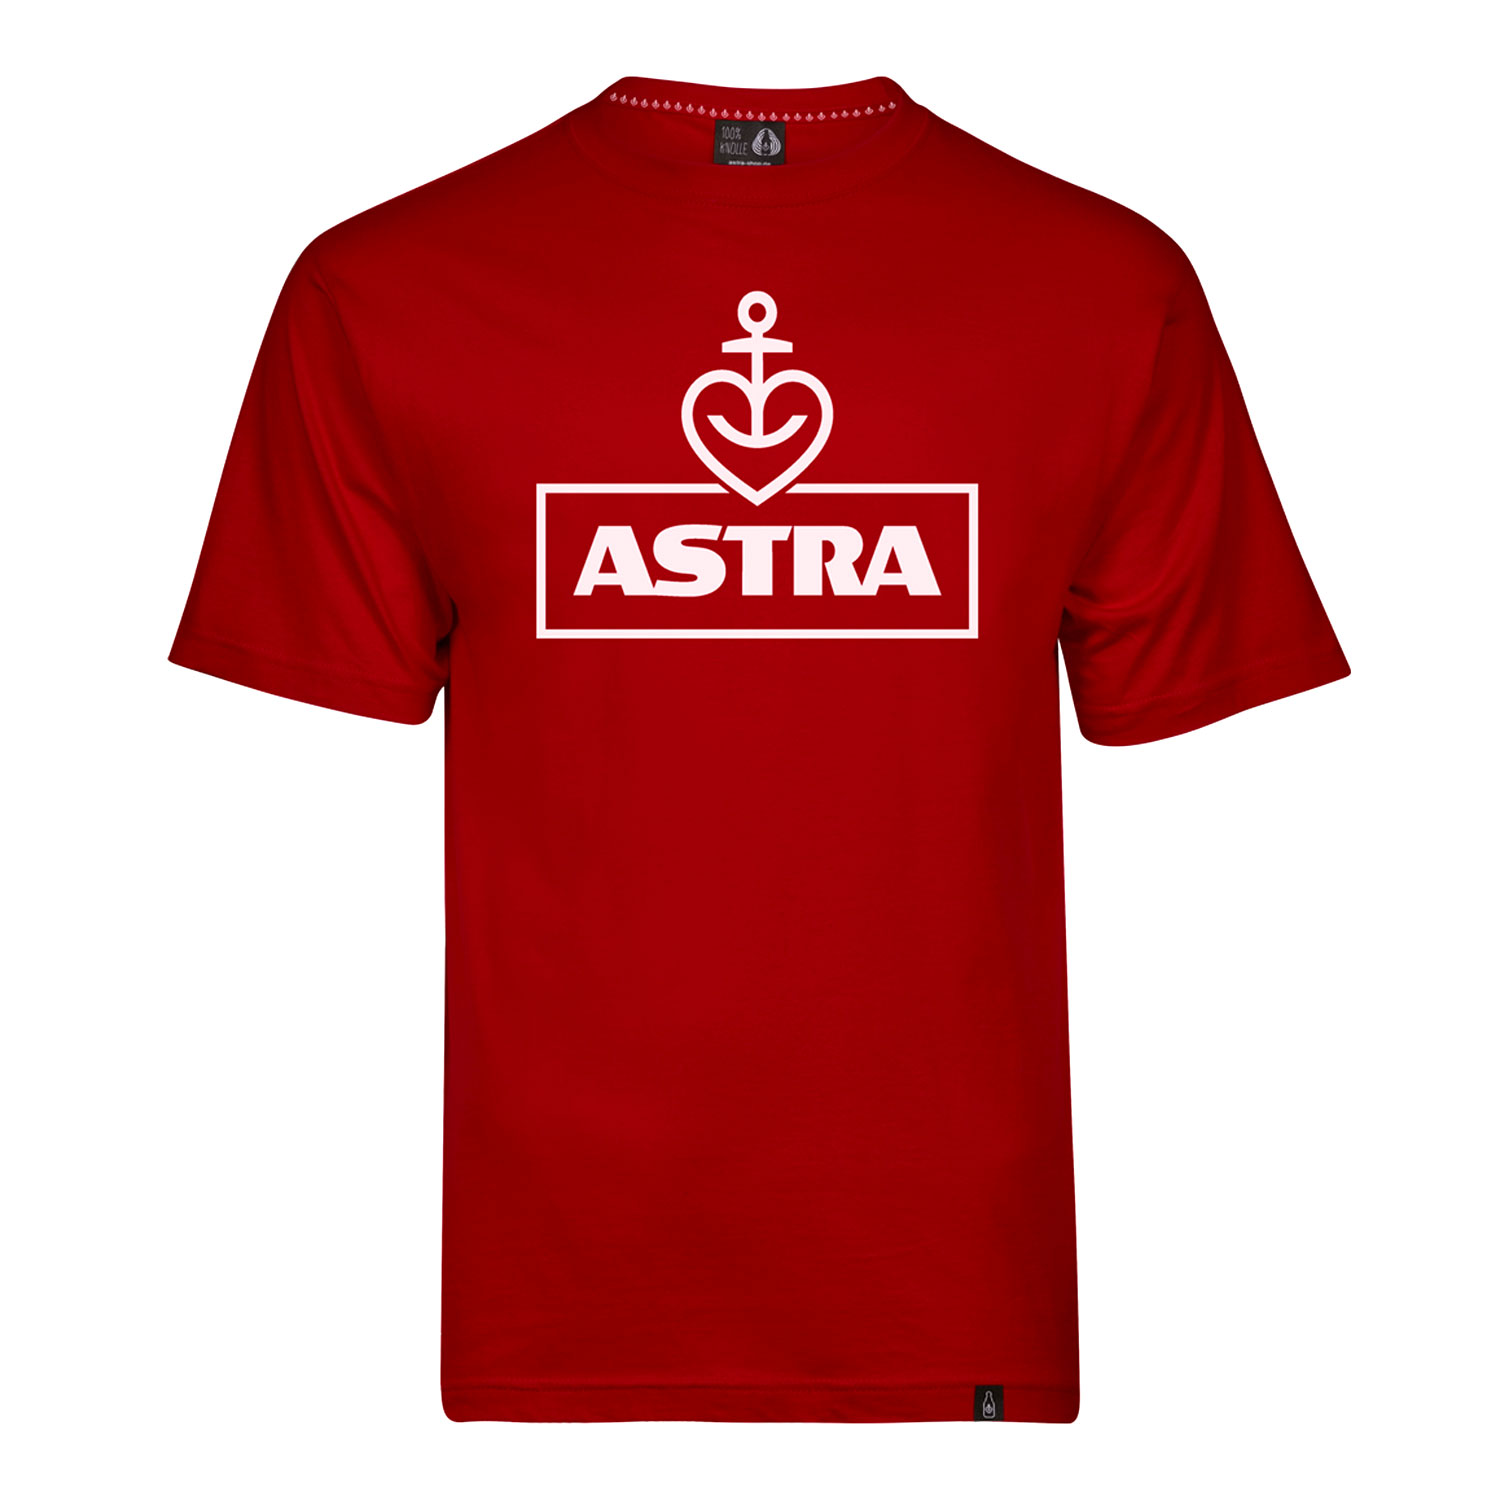 Herren T-Shirt „Astra“, rot